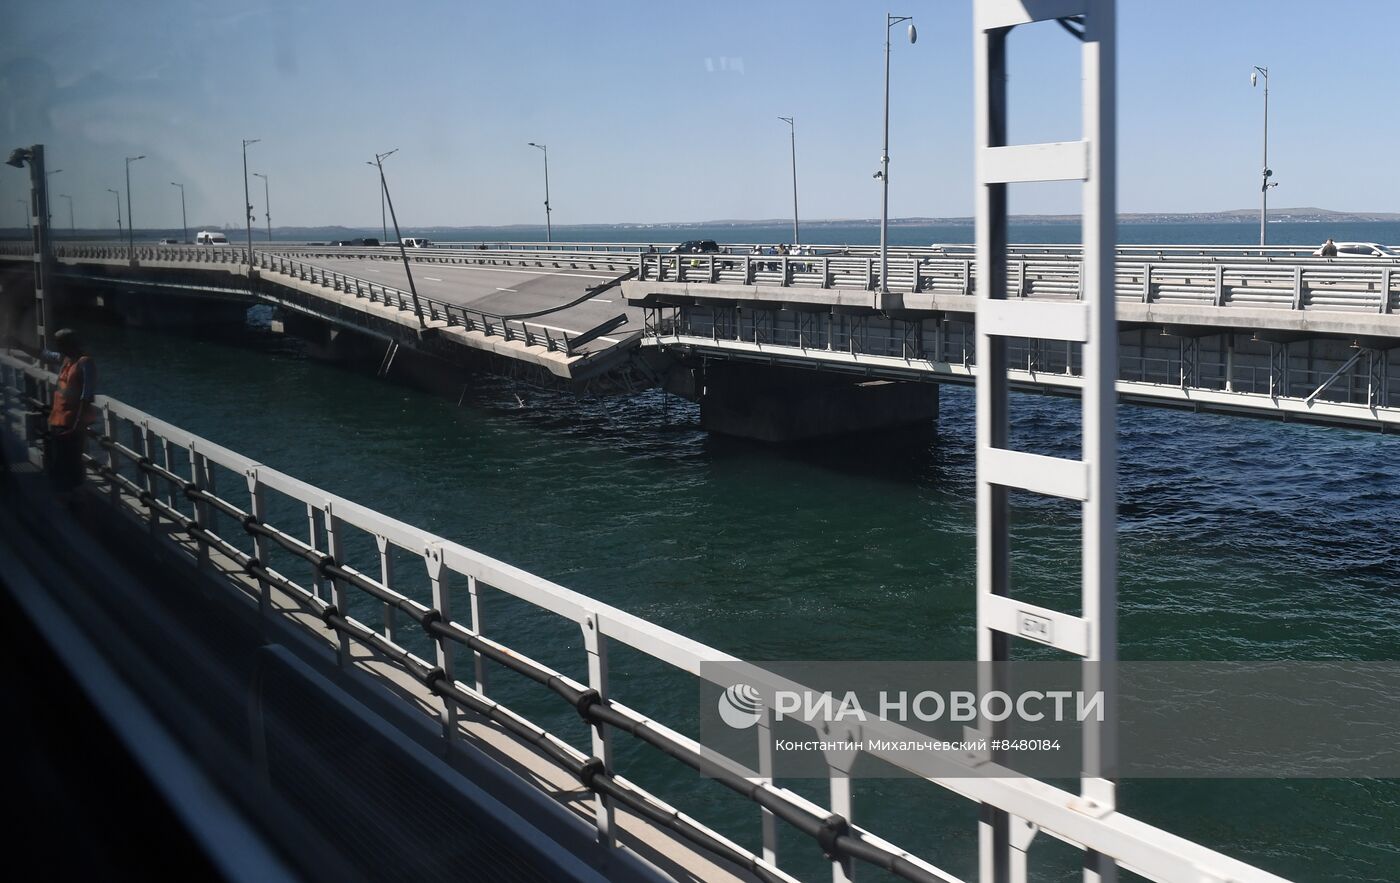 Обстановка у Крымского моста